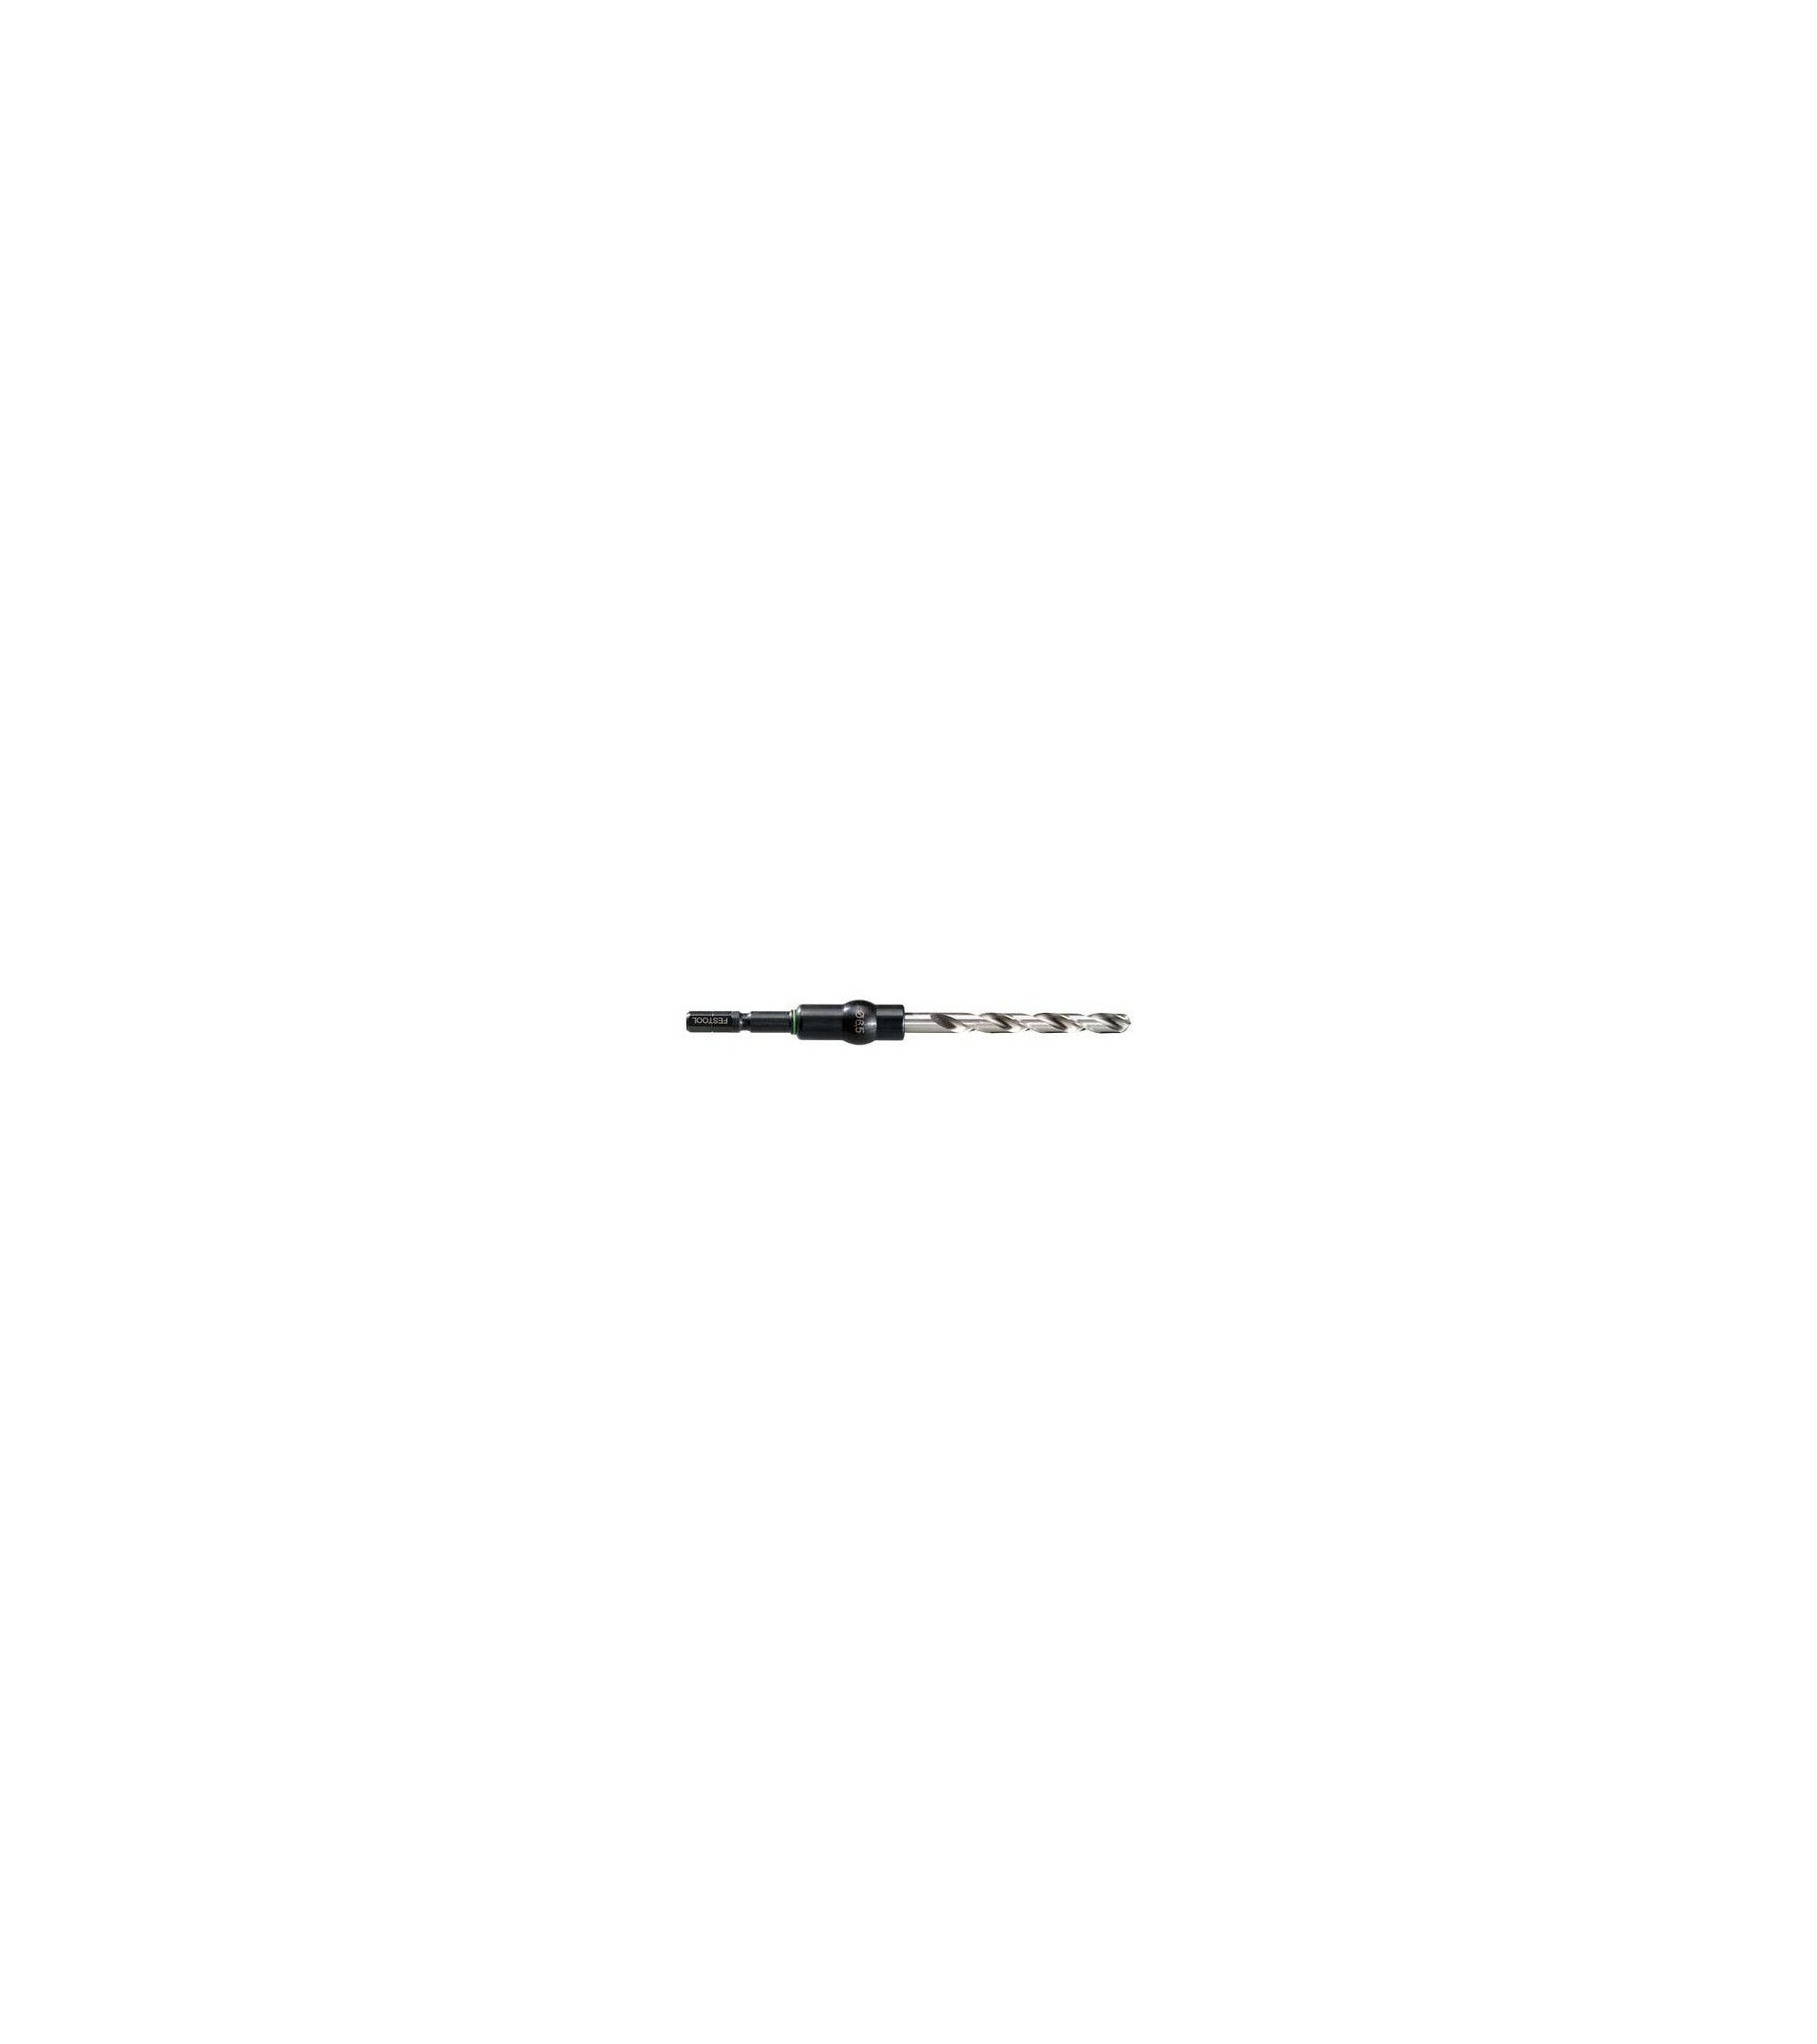 Festool Twist drill bit HSS D 3/33 CE/M-Set, KAINA BE PVM: 12.24, KODAS: 493421 | 001